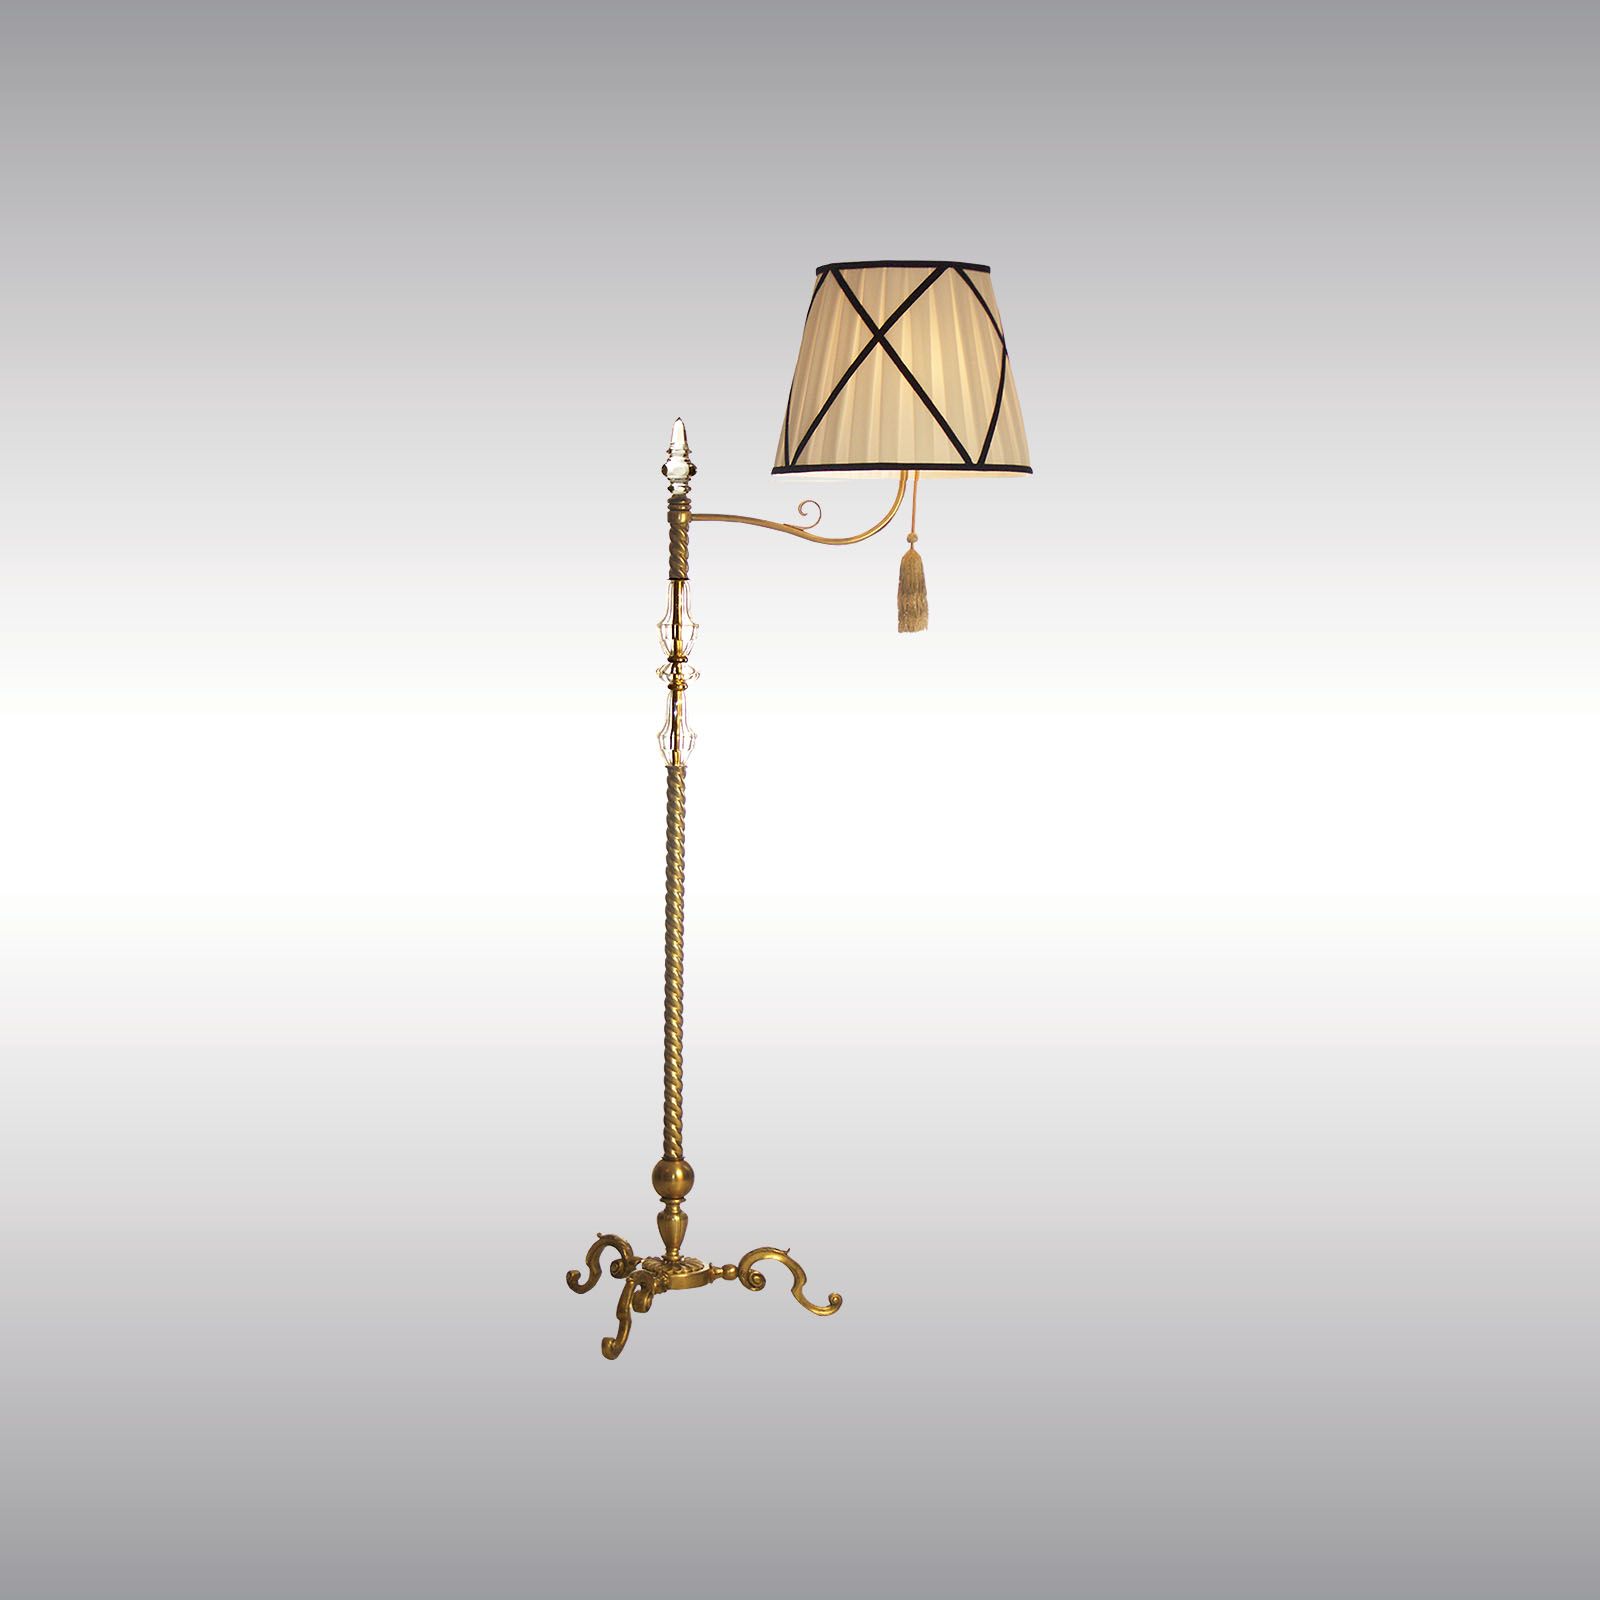 WOKA LAMPS VIENNA - OrderNr.: 60013|Bodenlampe im historistischen Stil - Design: WOKA